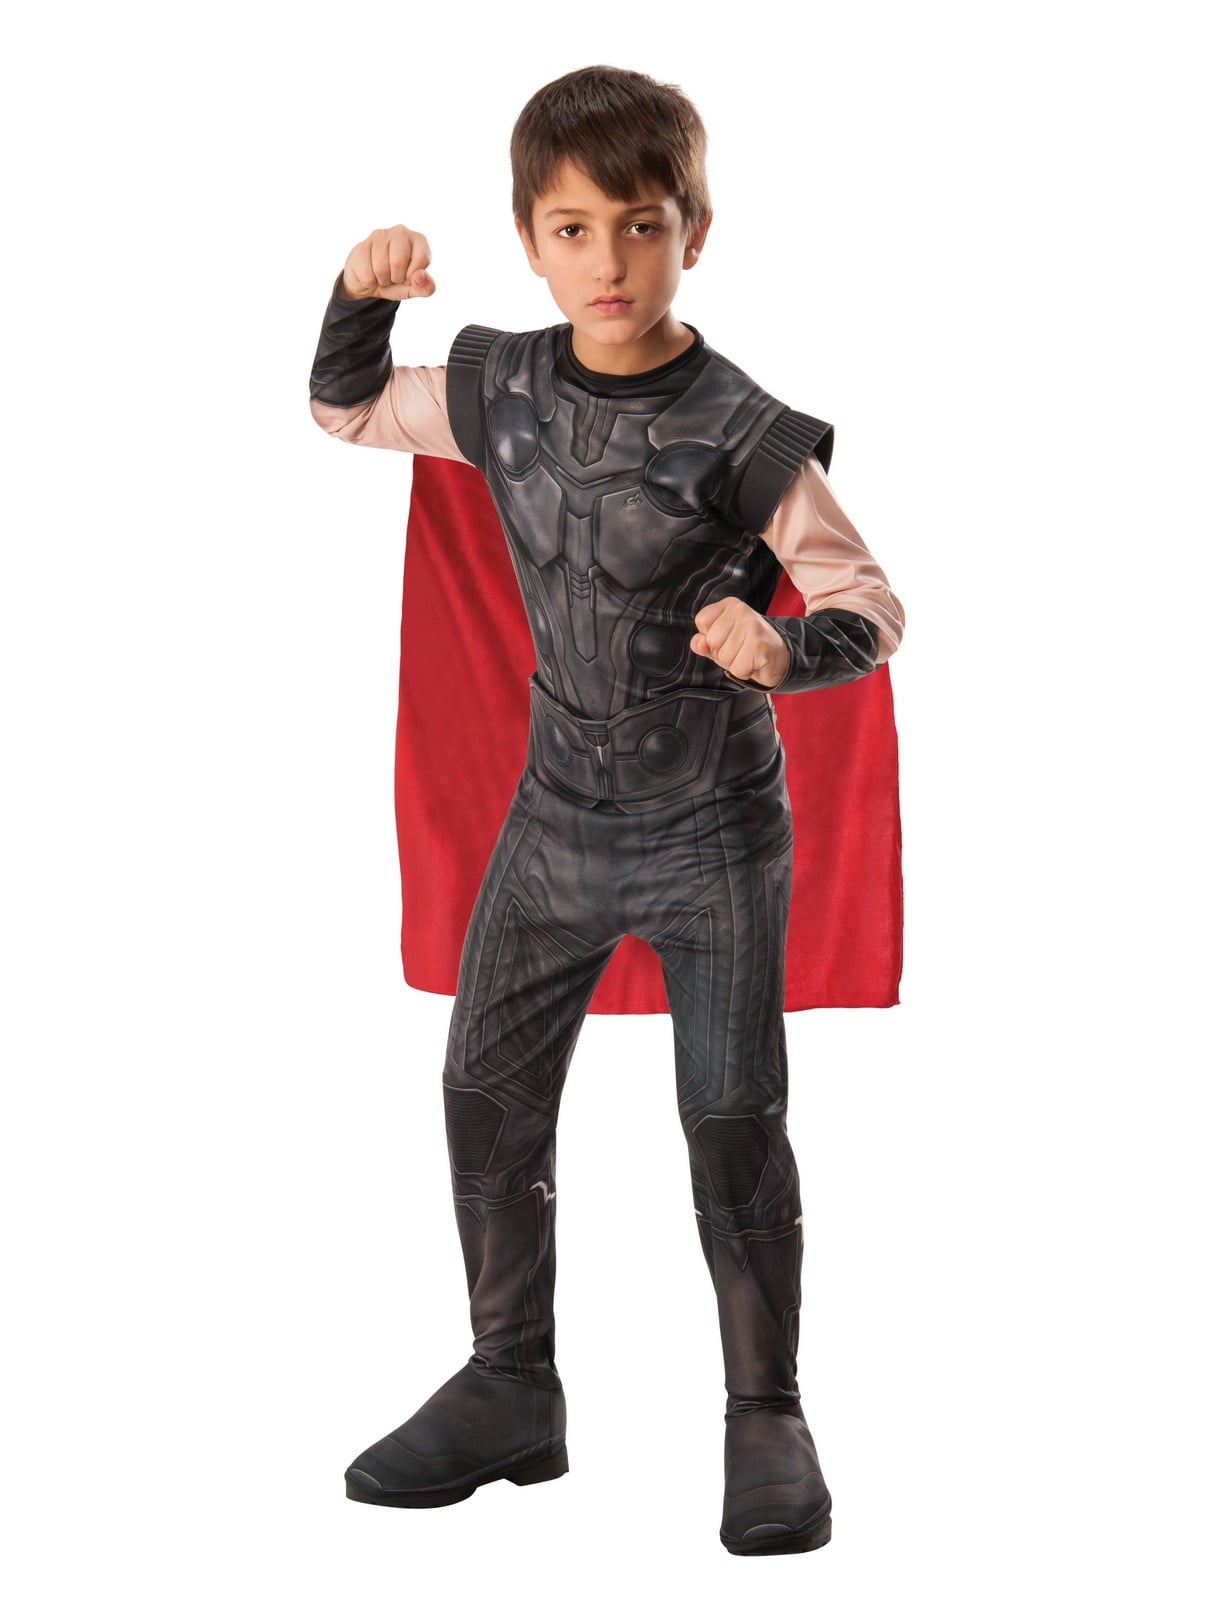 Avengers Thor Helmet Boys Costume Halloween God of Thunder Ragnarok Youth 35645 